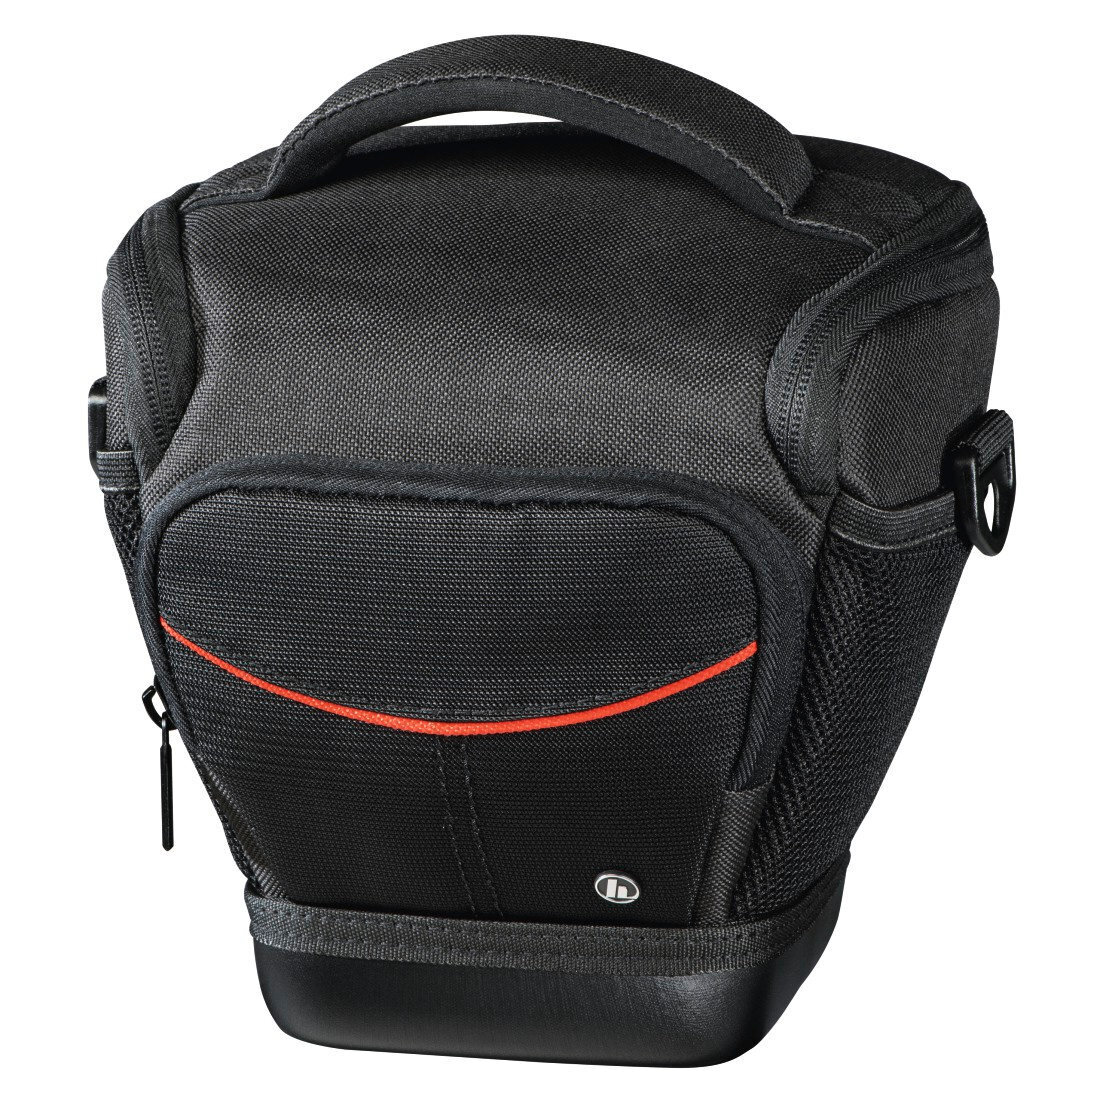 Kameratasche Fototasche passend für Nikon D3500 und 18-55mm Objektiv